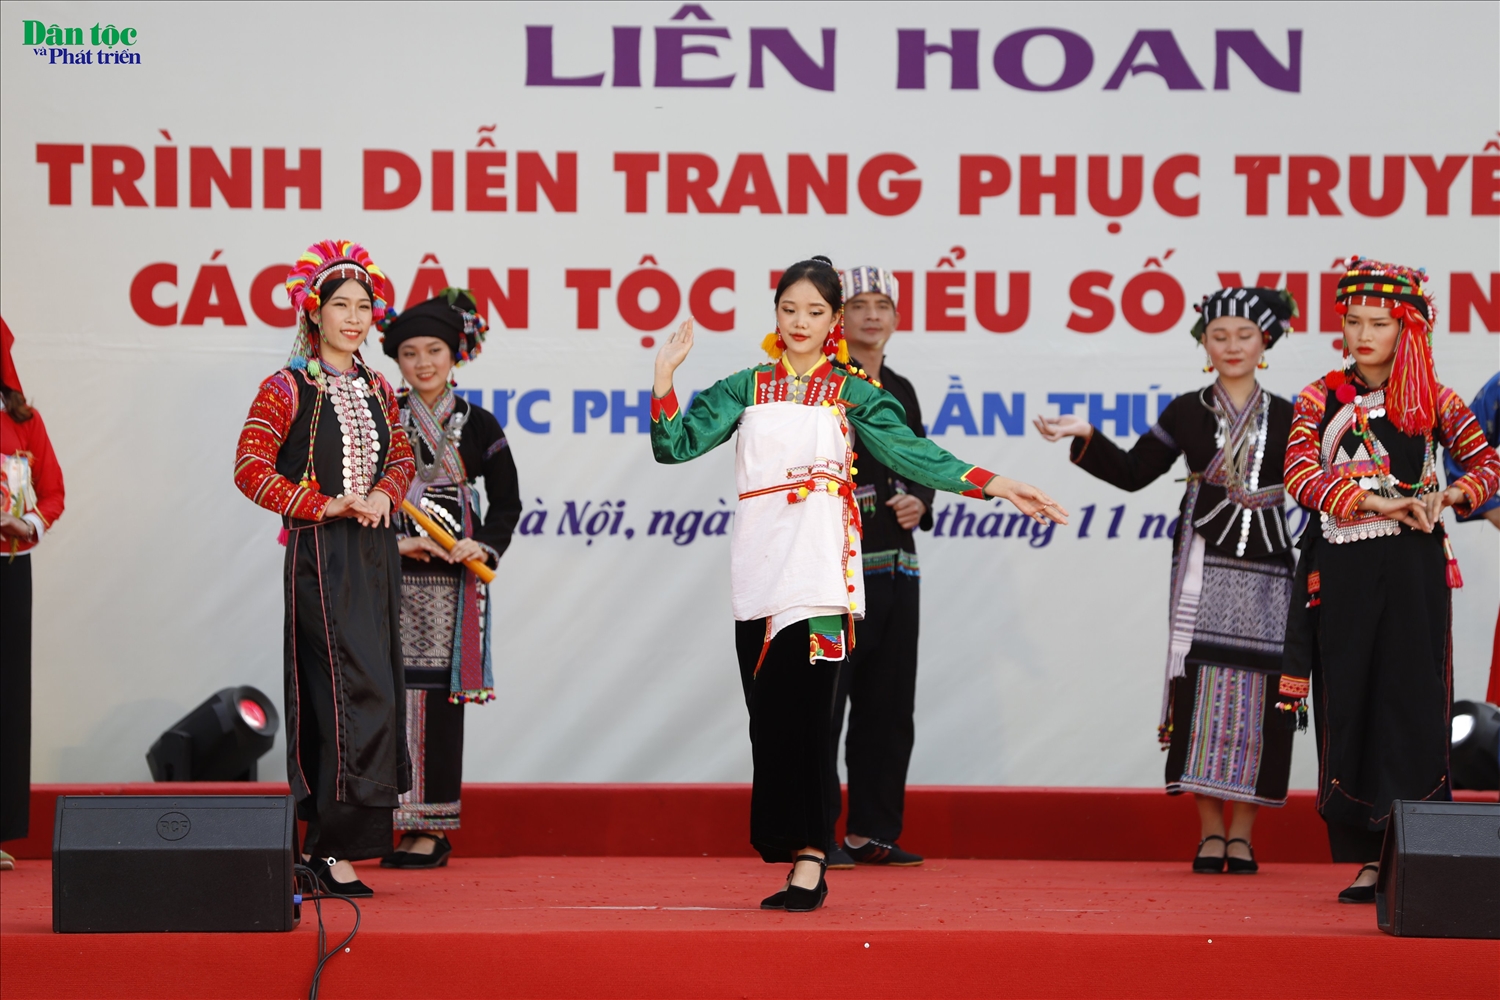 Trình diễn trang phục truyền thống dân tộc Lự, La Hủ, Hà Nhì, Mảng (tỉnh Lai châu) 